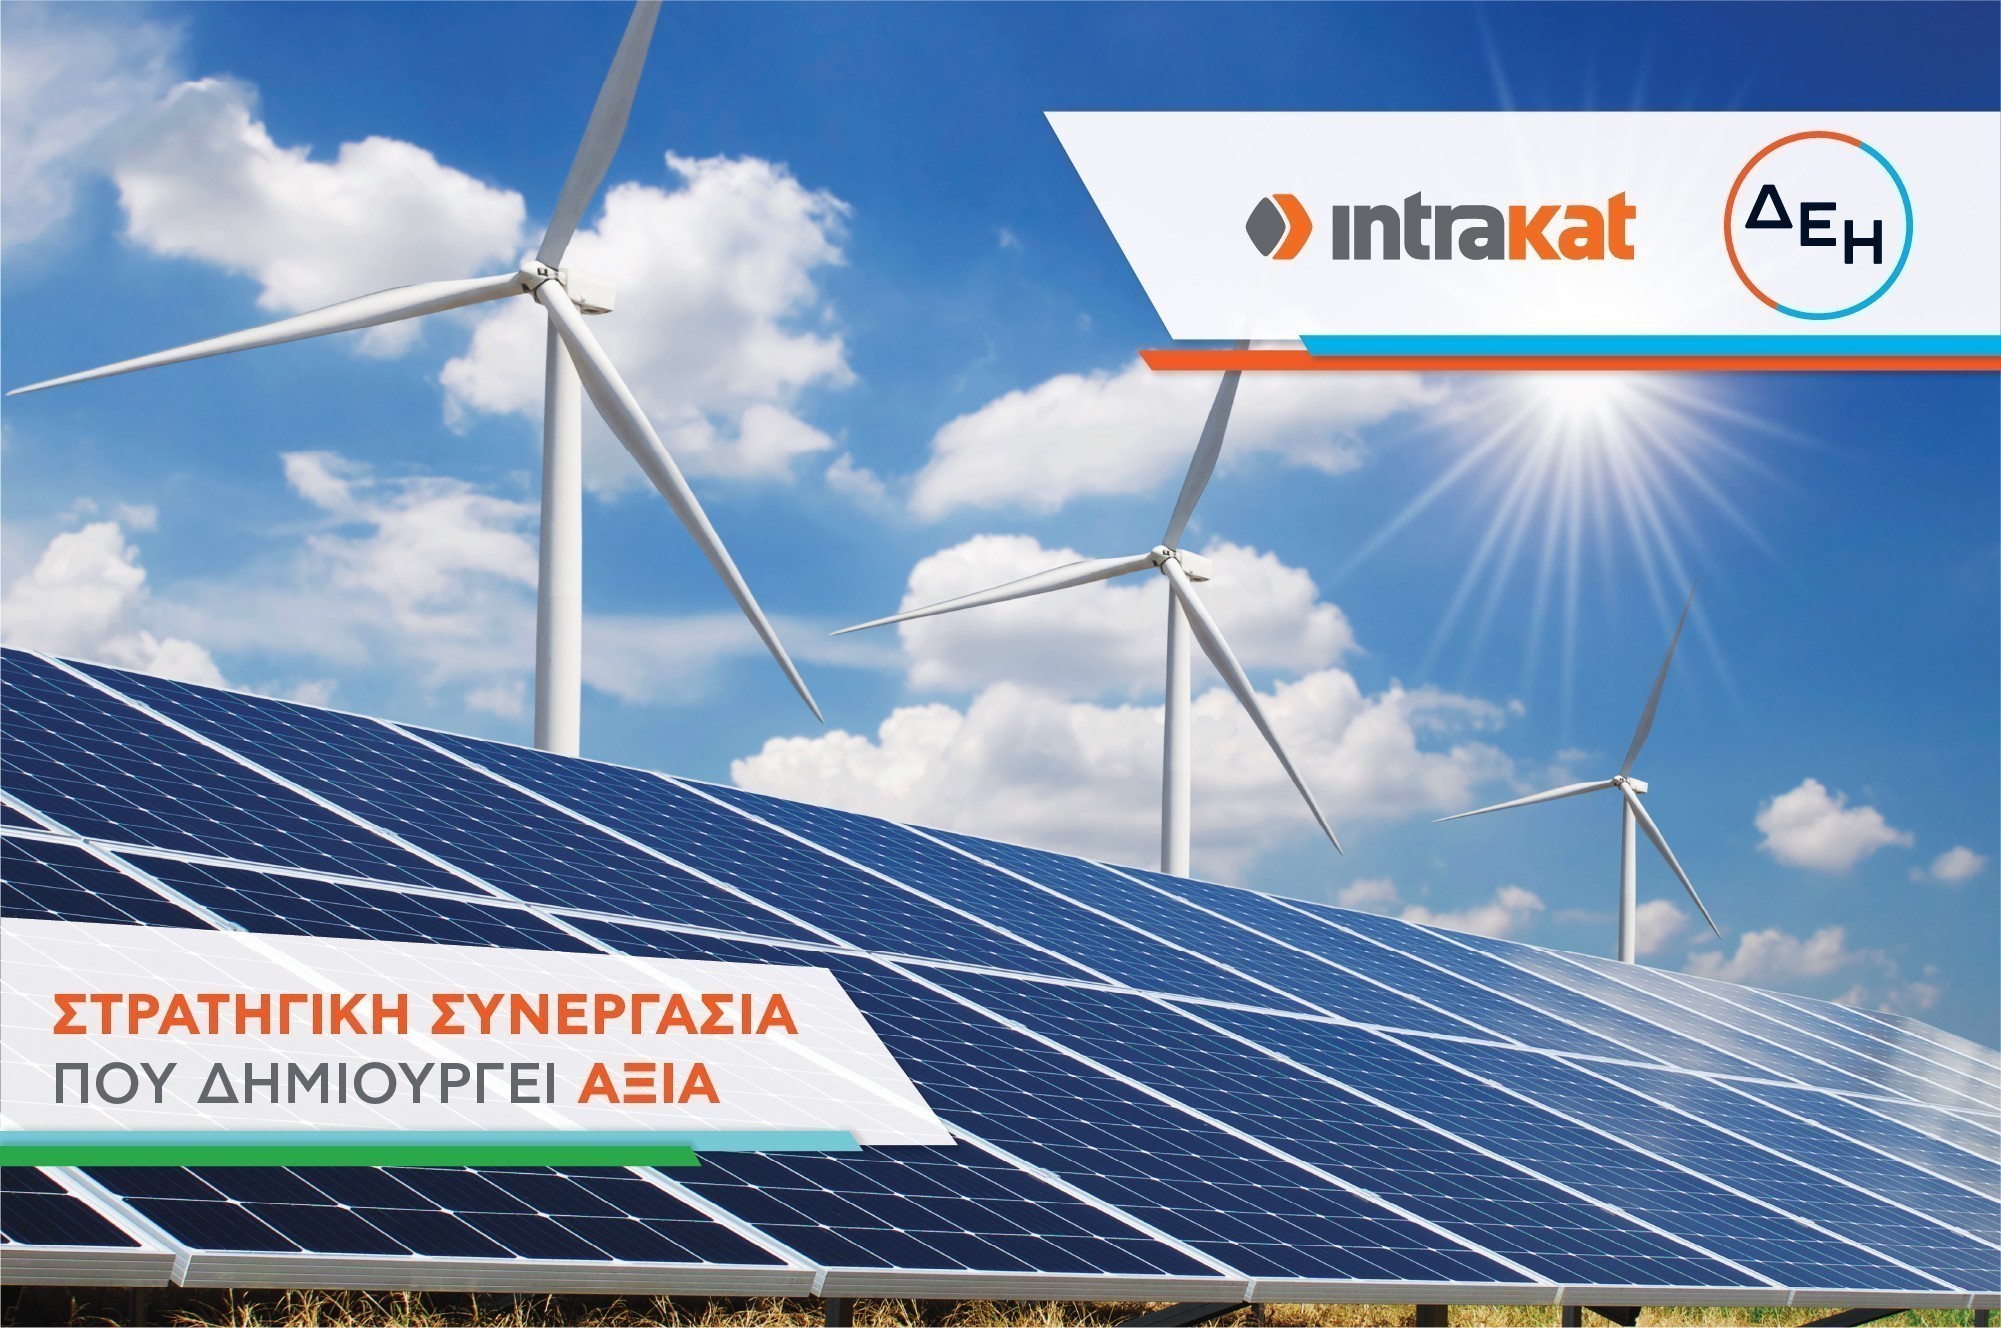 Στρατηγική συνεργασία Intrakat – ΔΕΗ Ανανεώσιμες για την ανάπτυξη του χαρτοφυλακίου Ανανεώσιμων Πηγών Ενέργειας